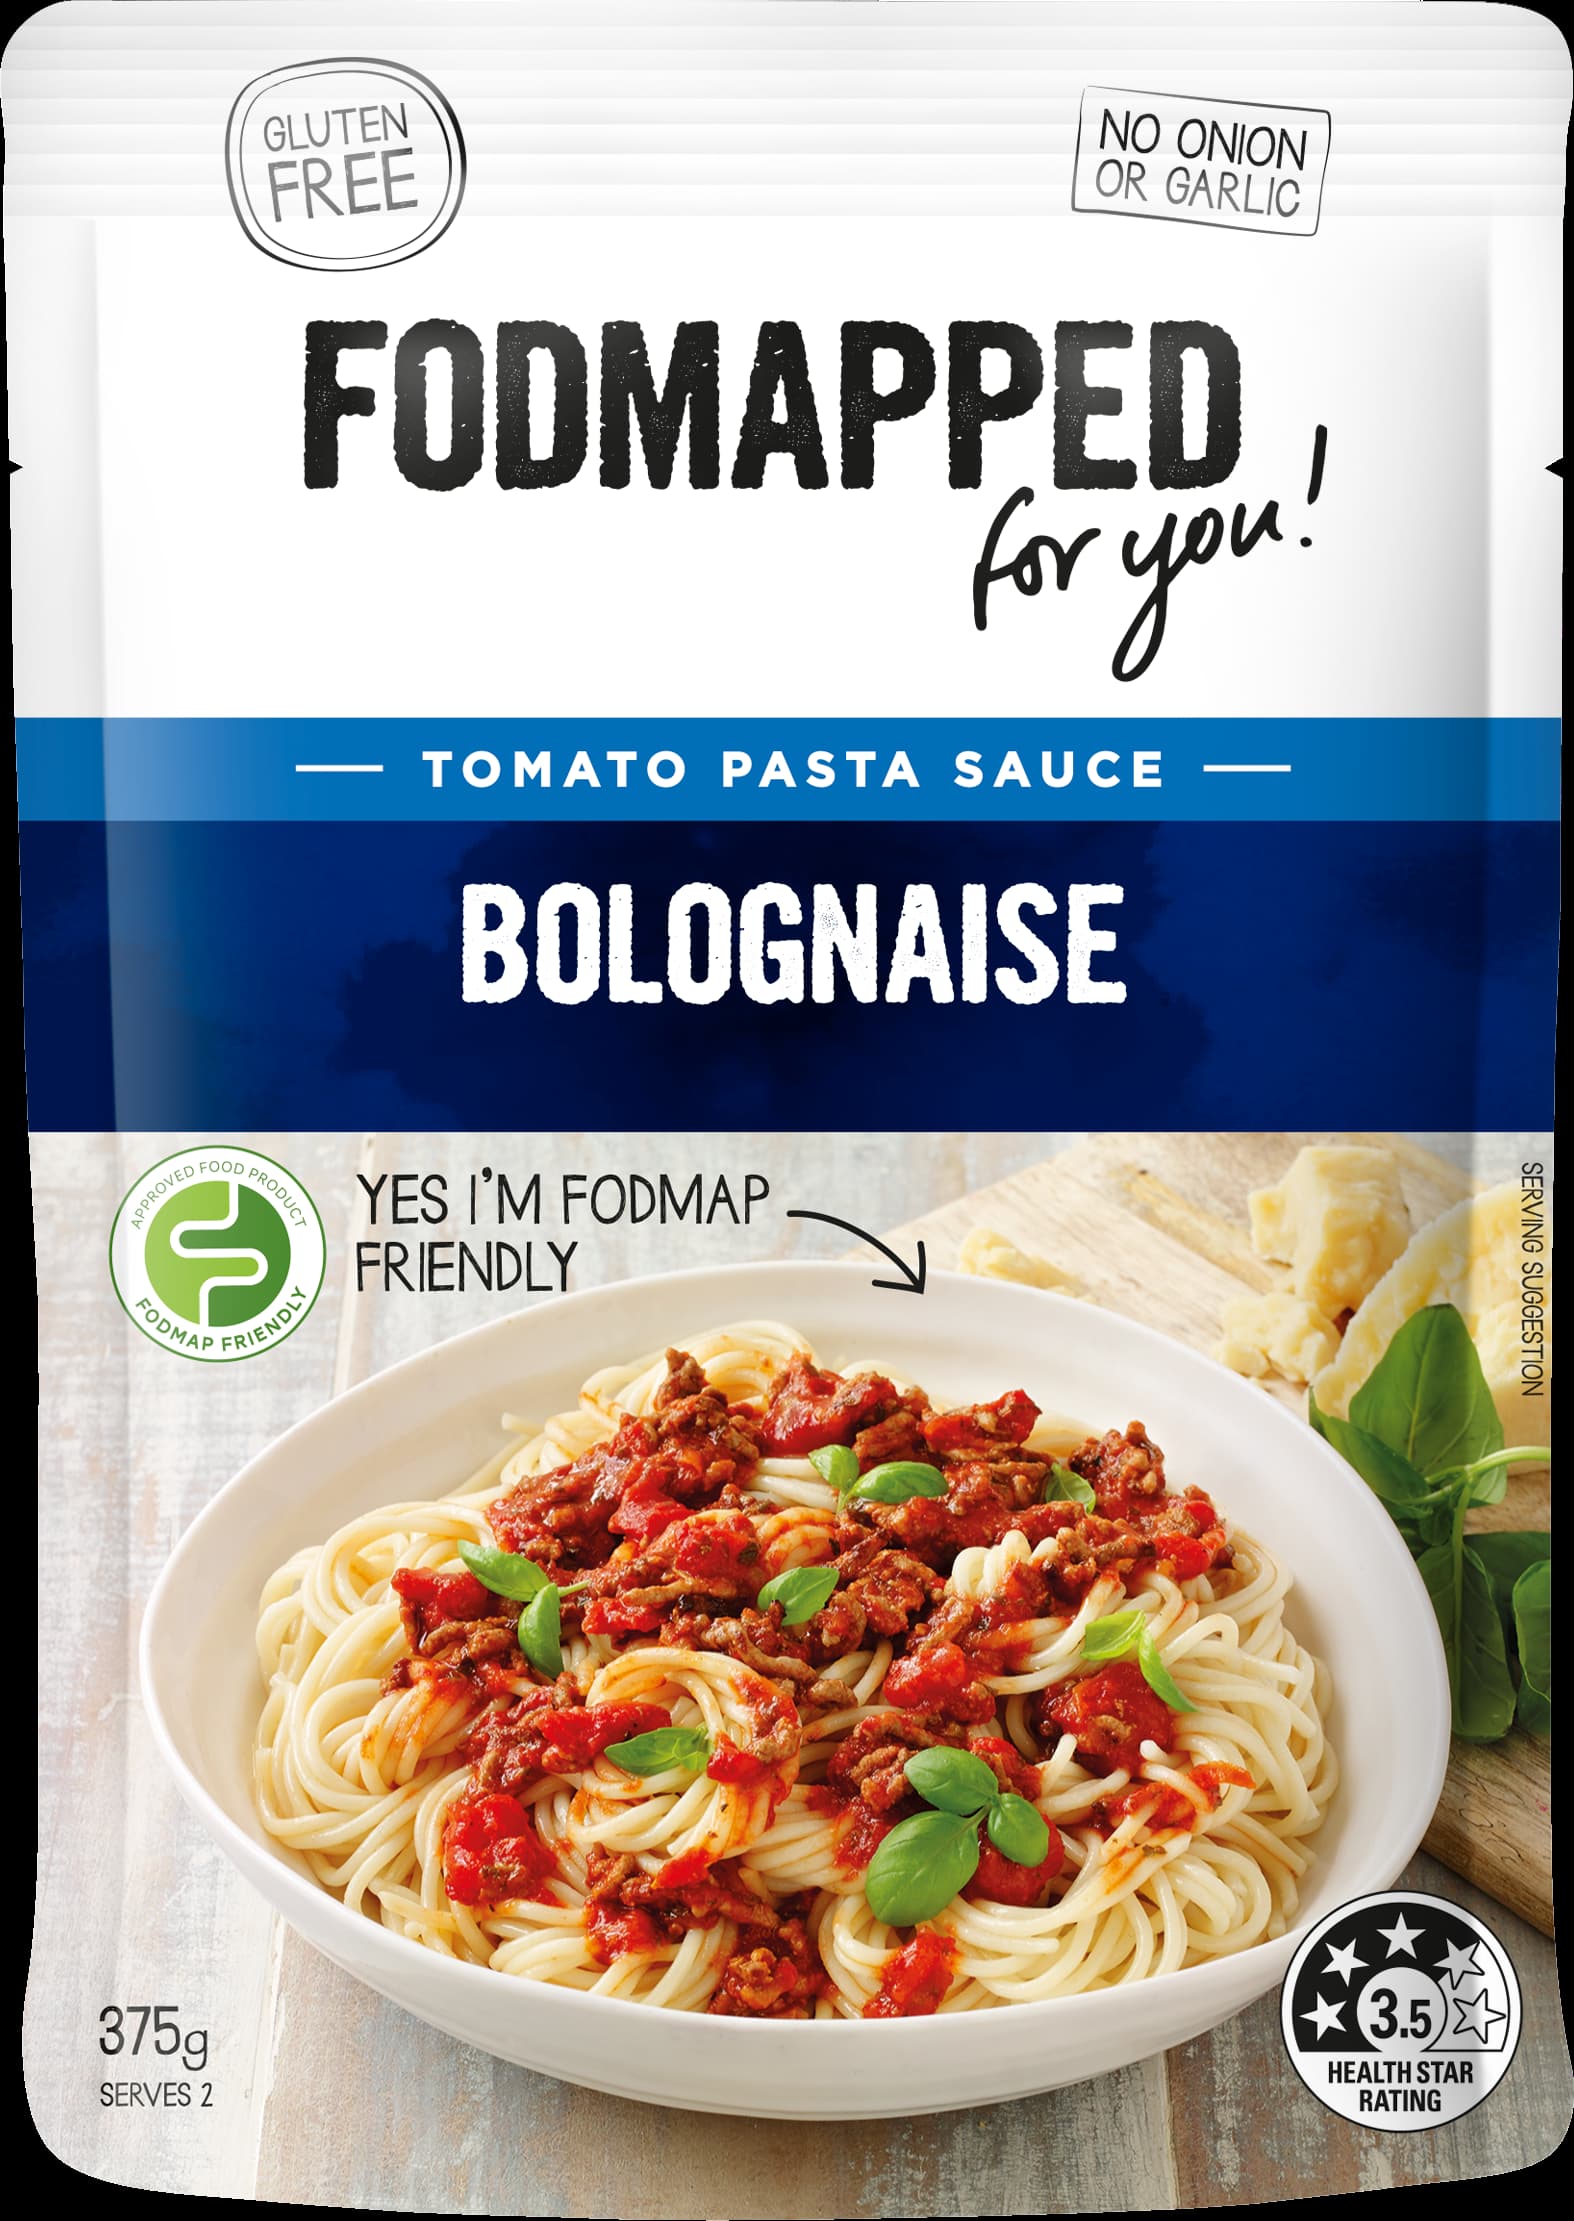 Fomapped-bolognaise-pasta-sauce-375g